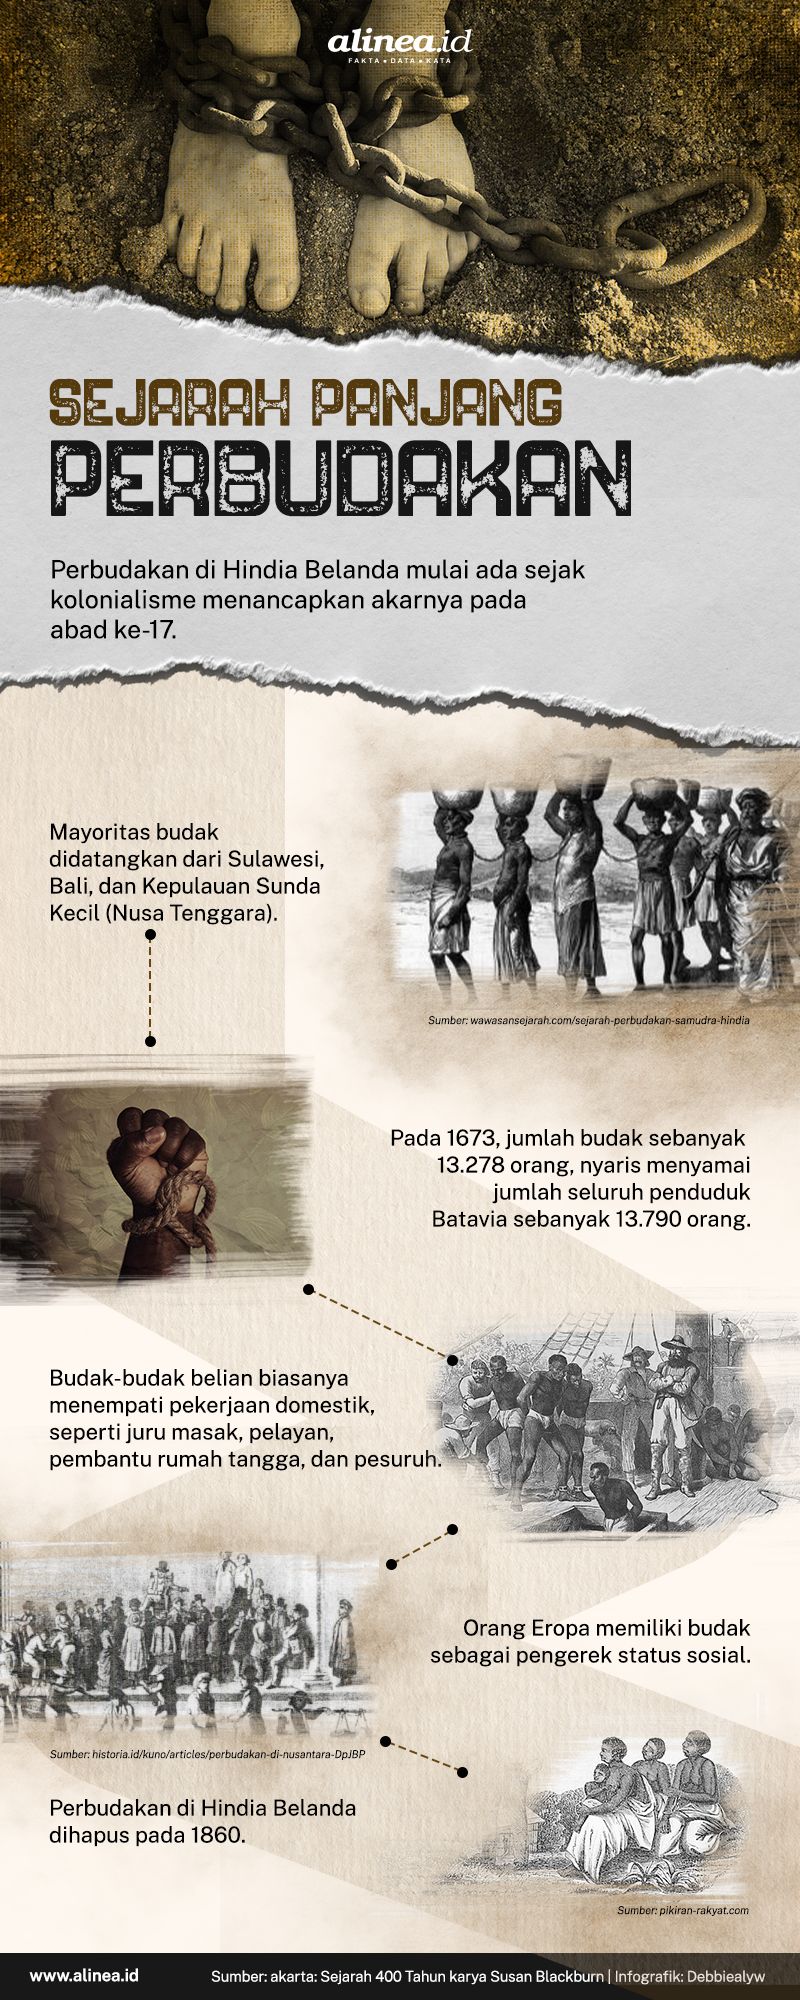 Infografik perbudakan. Alinea.id/Debbie Alyuwandira.